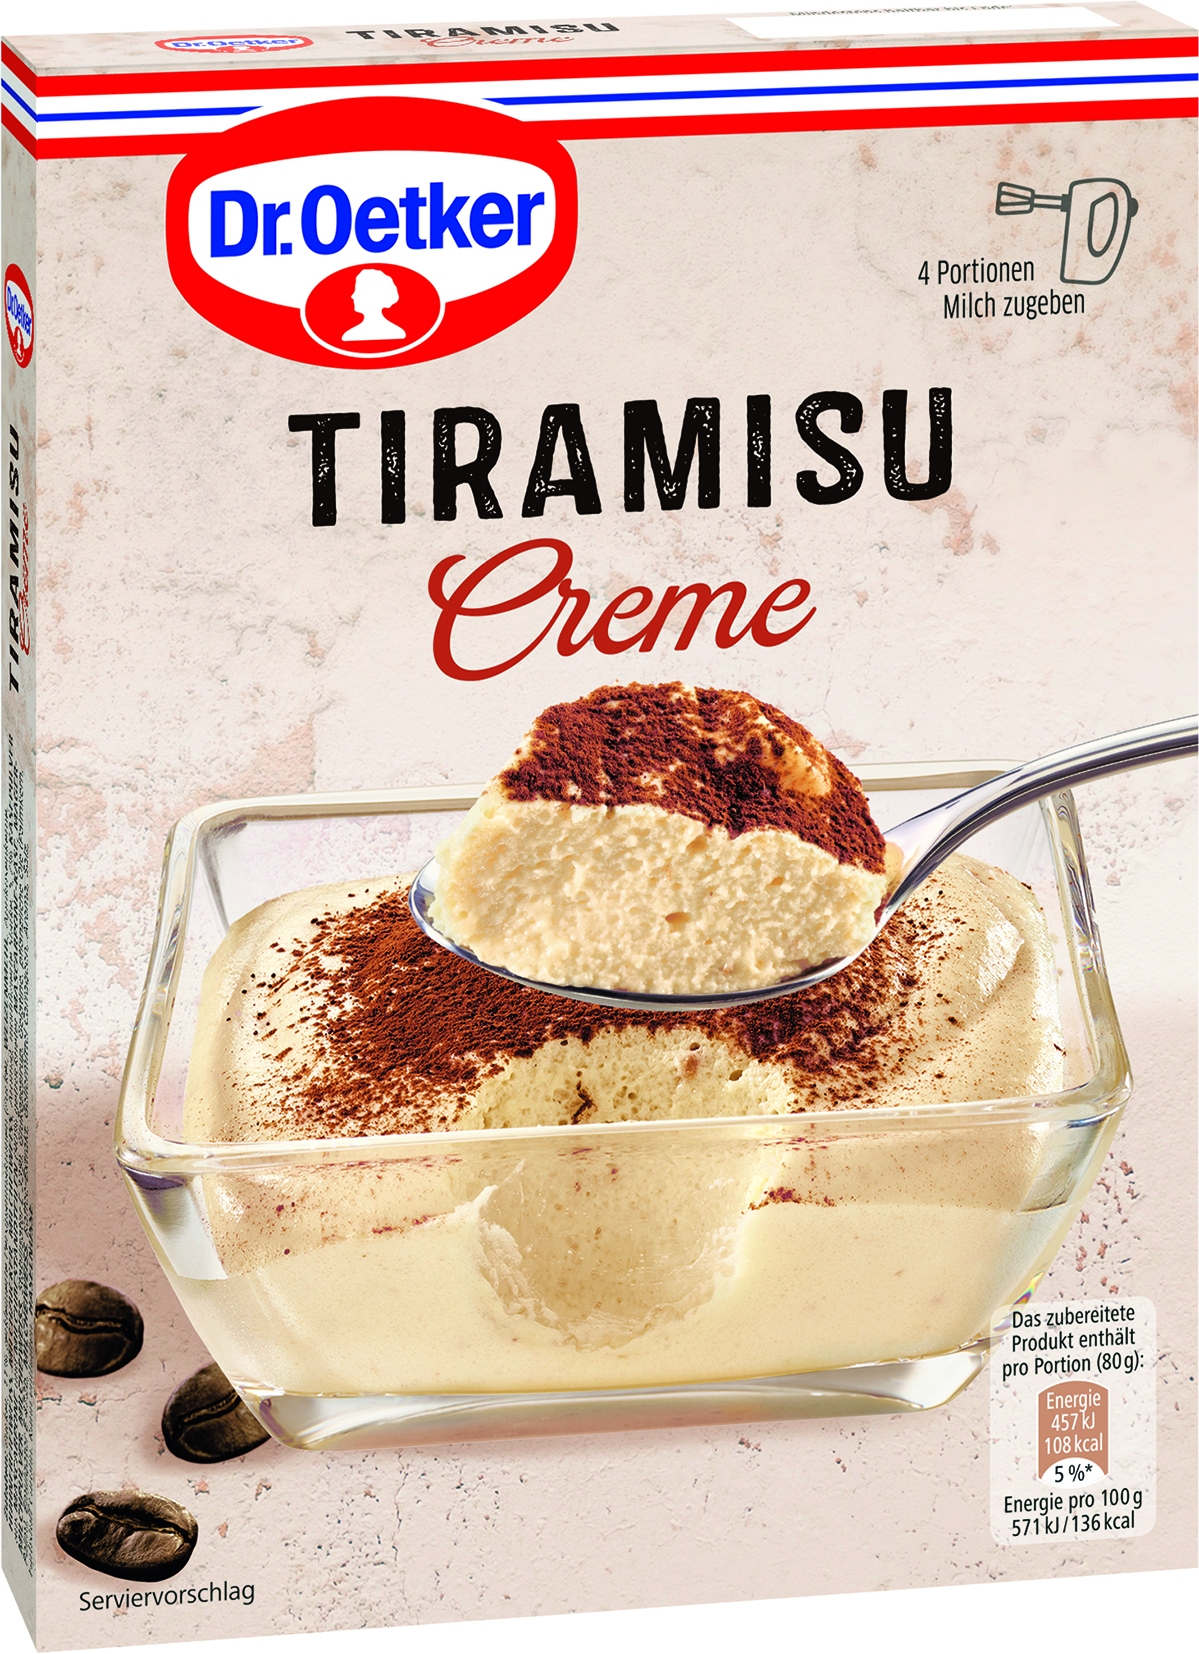 Dessert Creme Tiramisu   